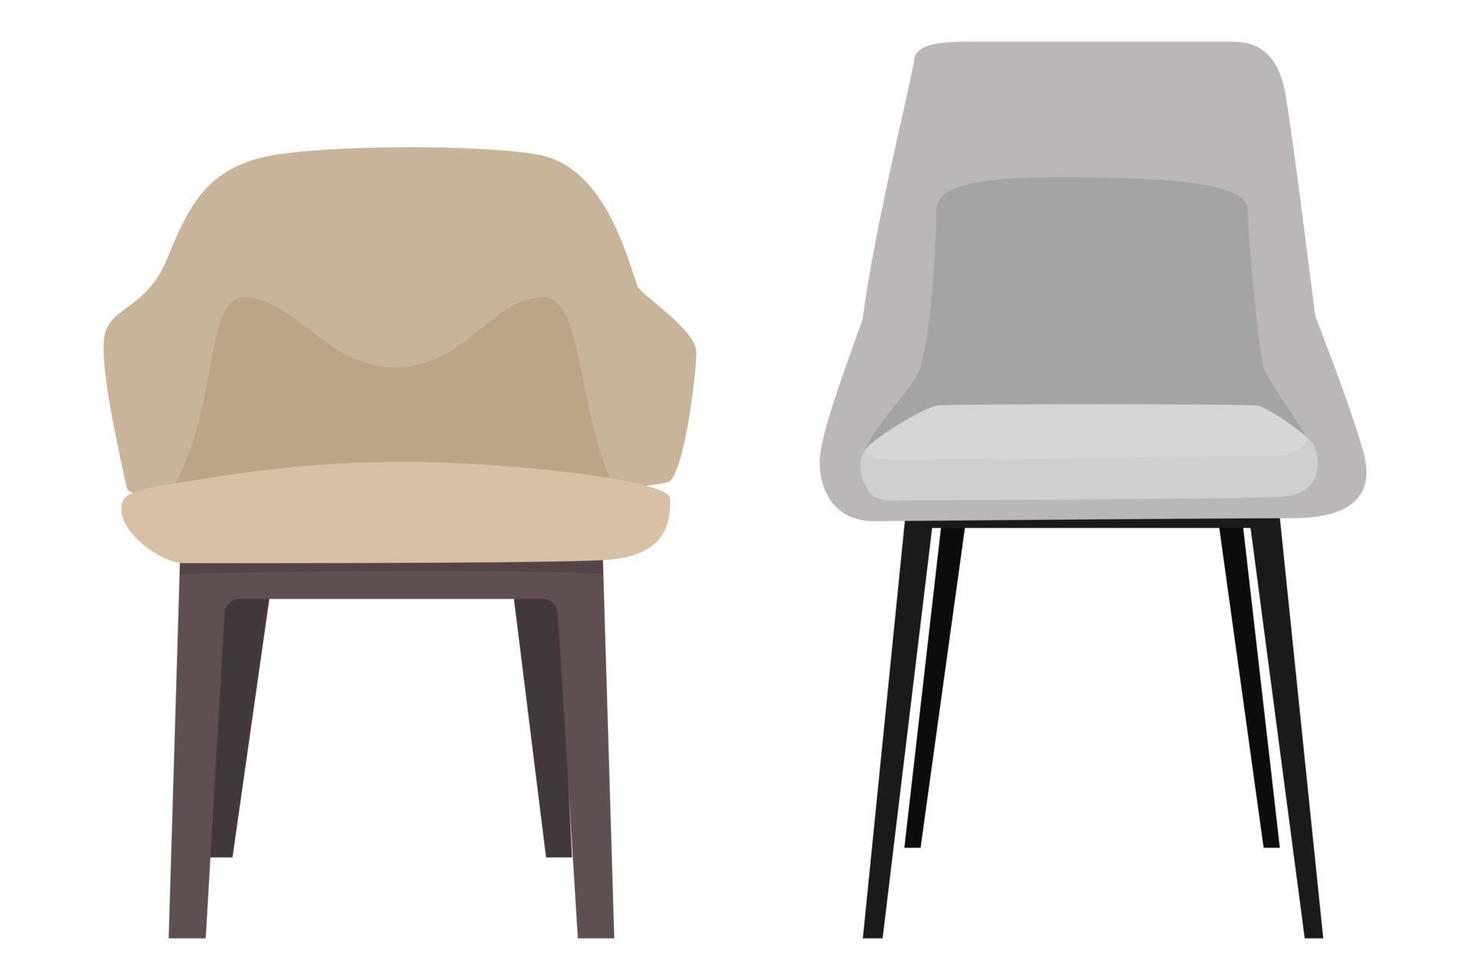 lindas cadeiras modernas para escritório e ao ar livre com diferentes poses, posições e cores isoladas vetor